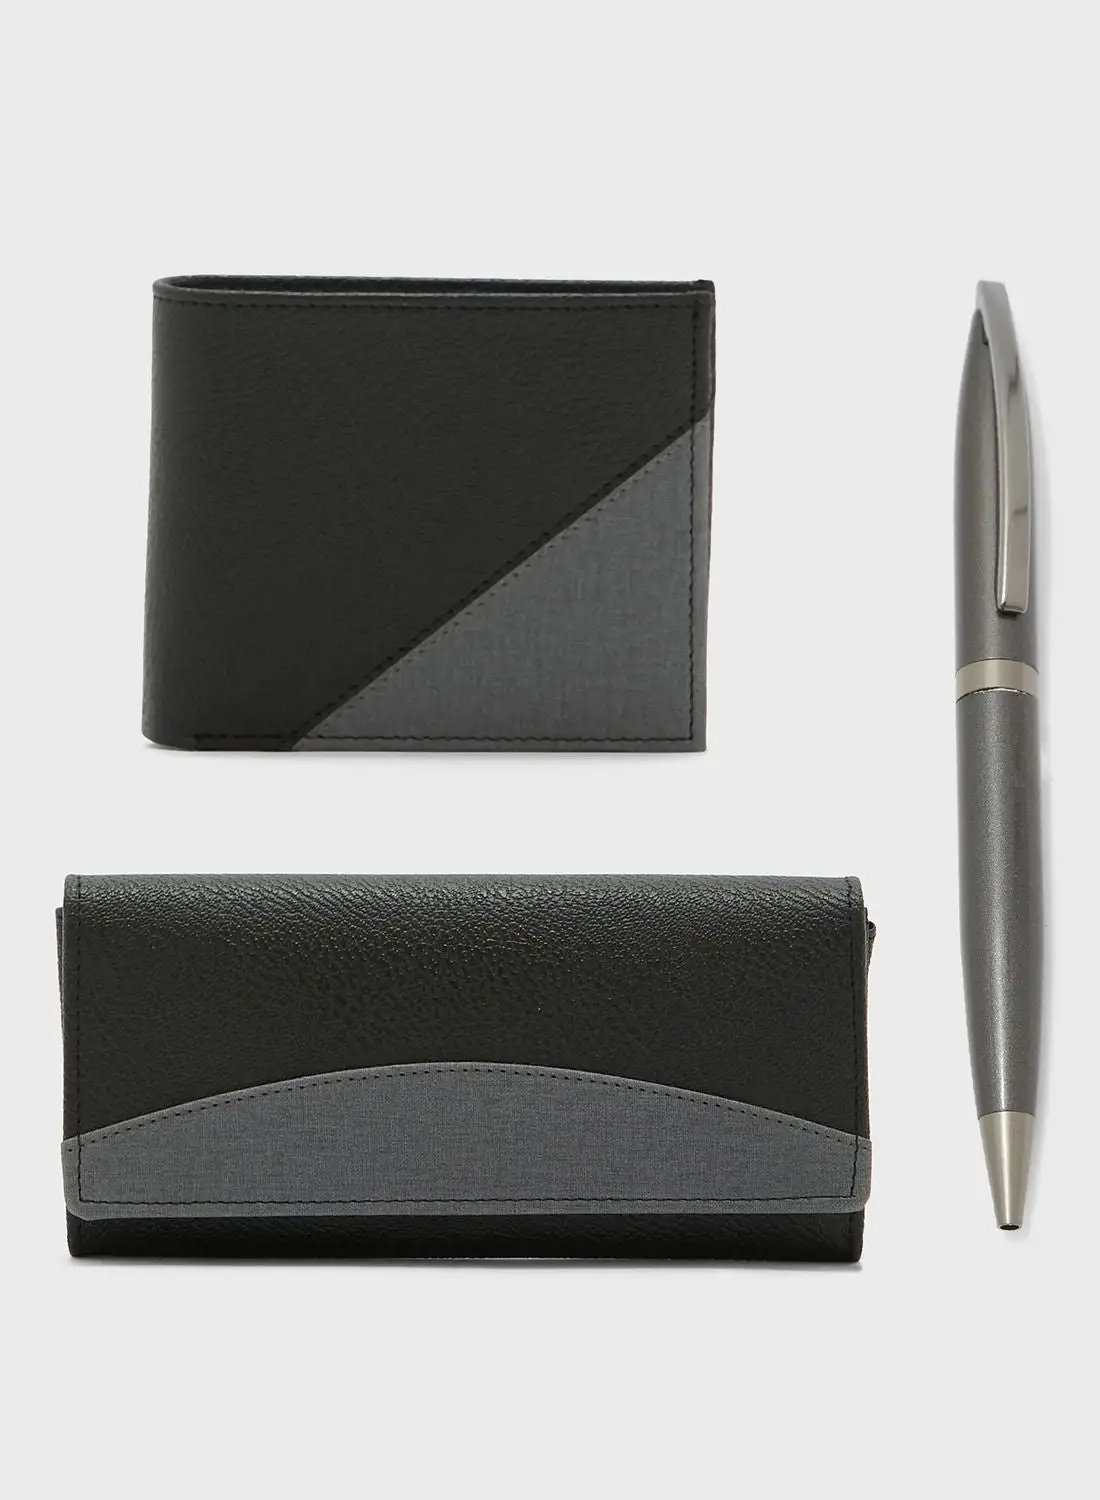 محفظة روبرت وود للرجال والنساء + مجموعة هدايا قلم